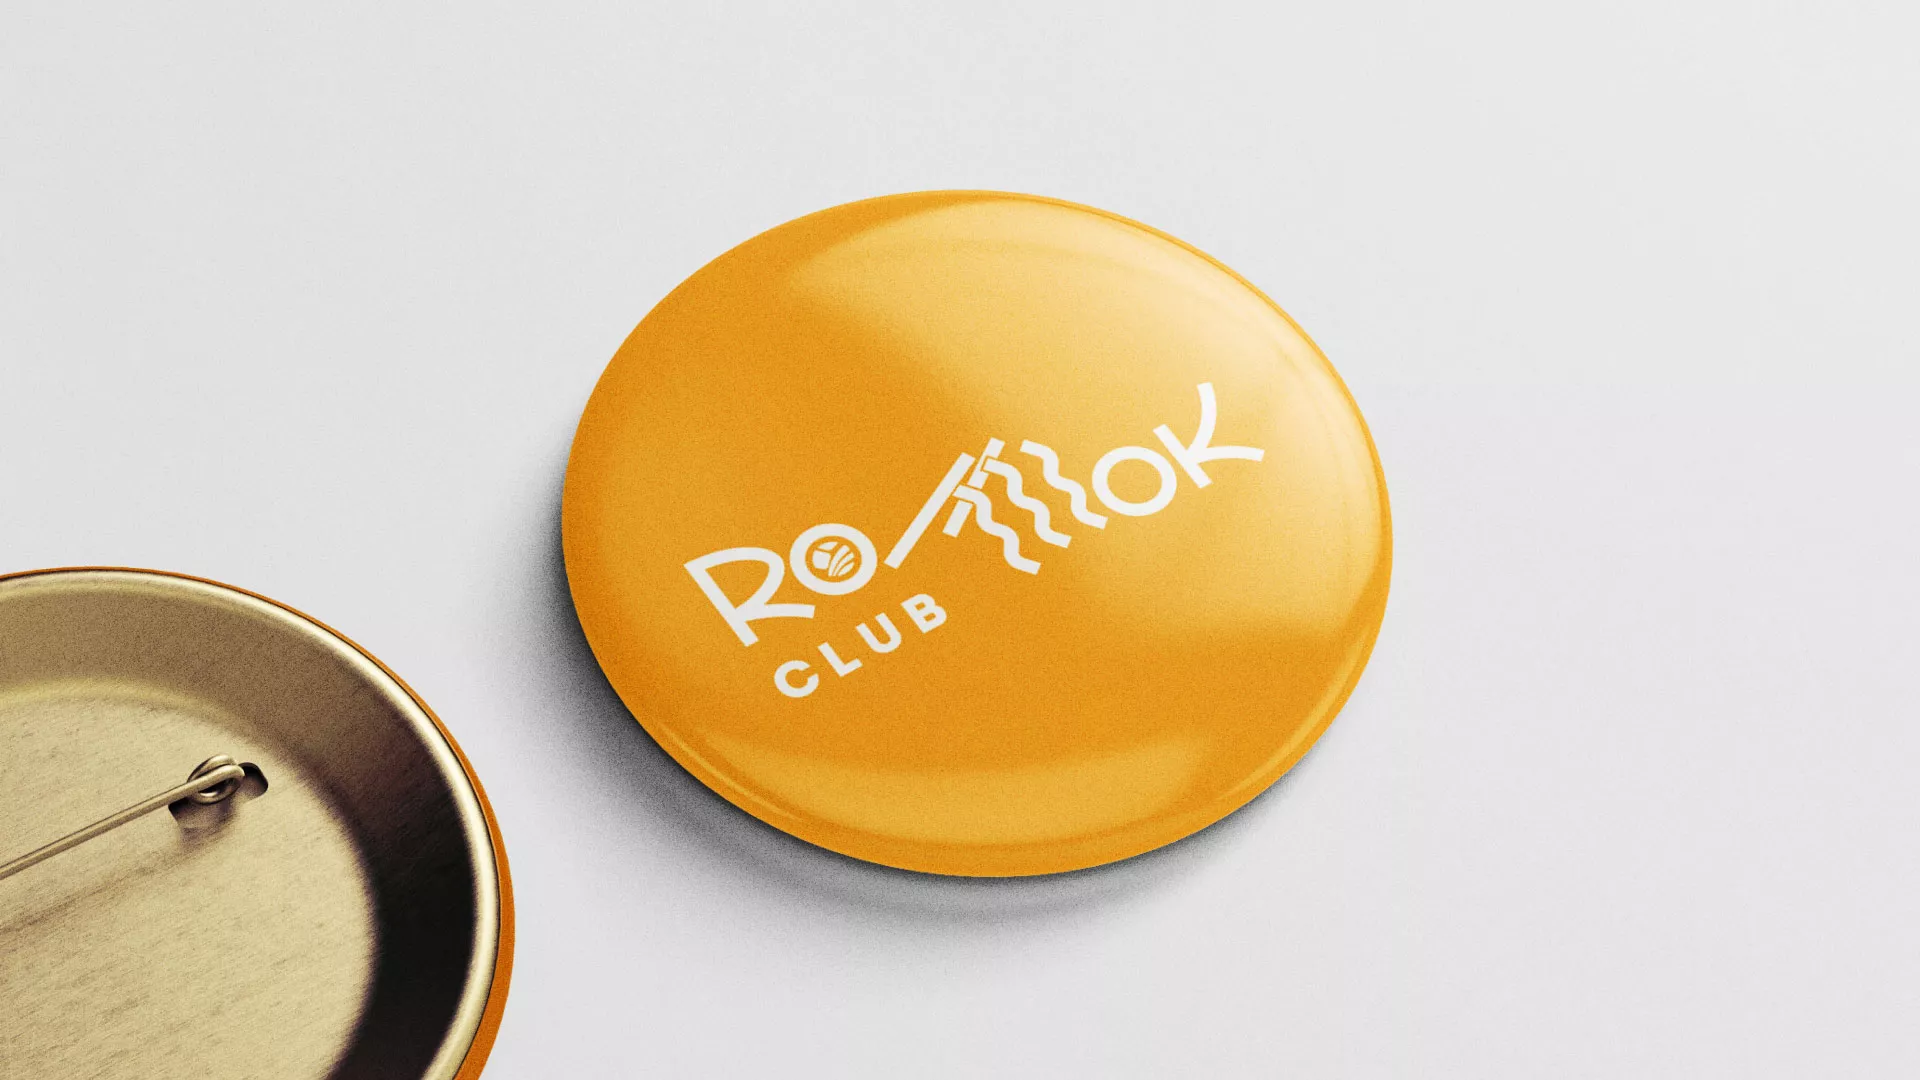 Создание логотипа суши-бара «Roll Wok Club» в Облучье